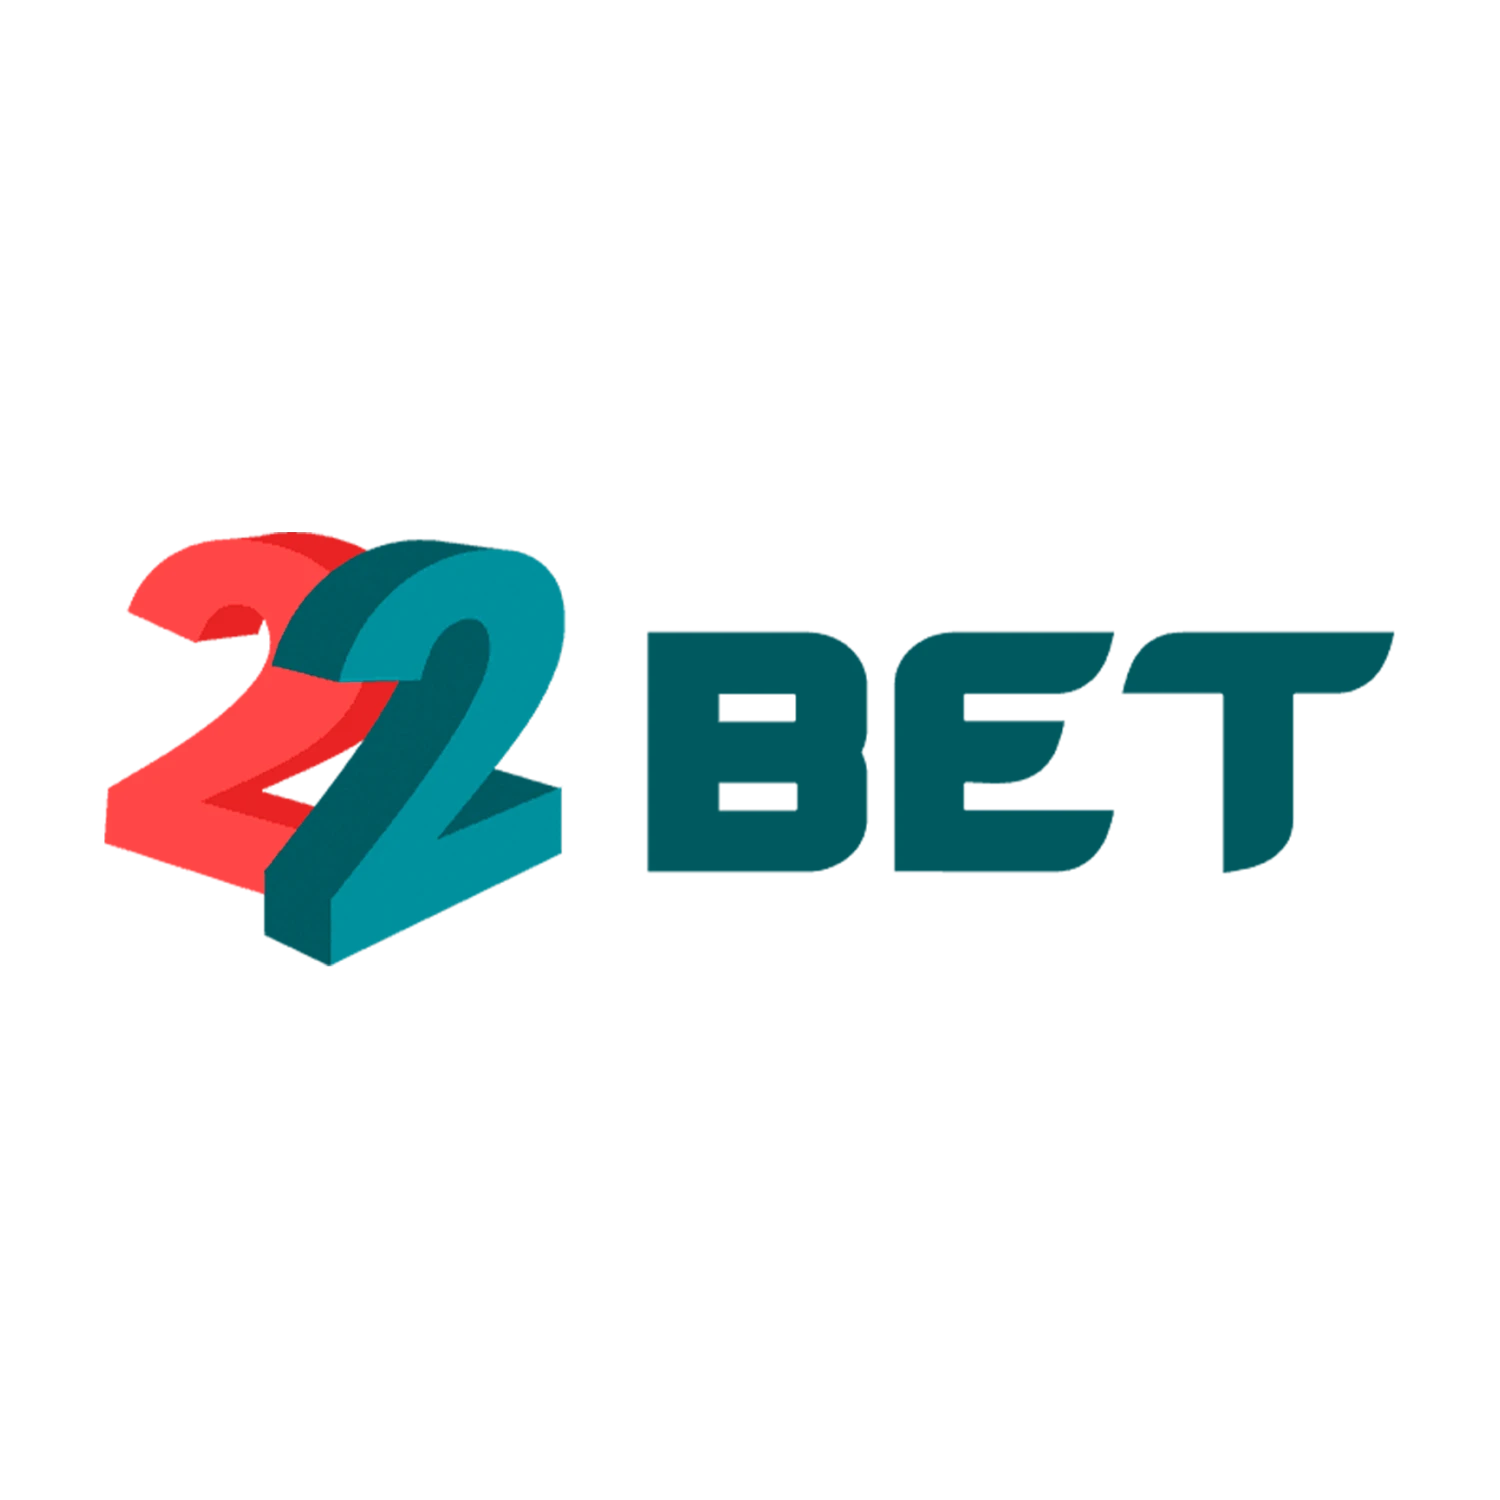 22bet - Обзор казино онлайн